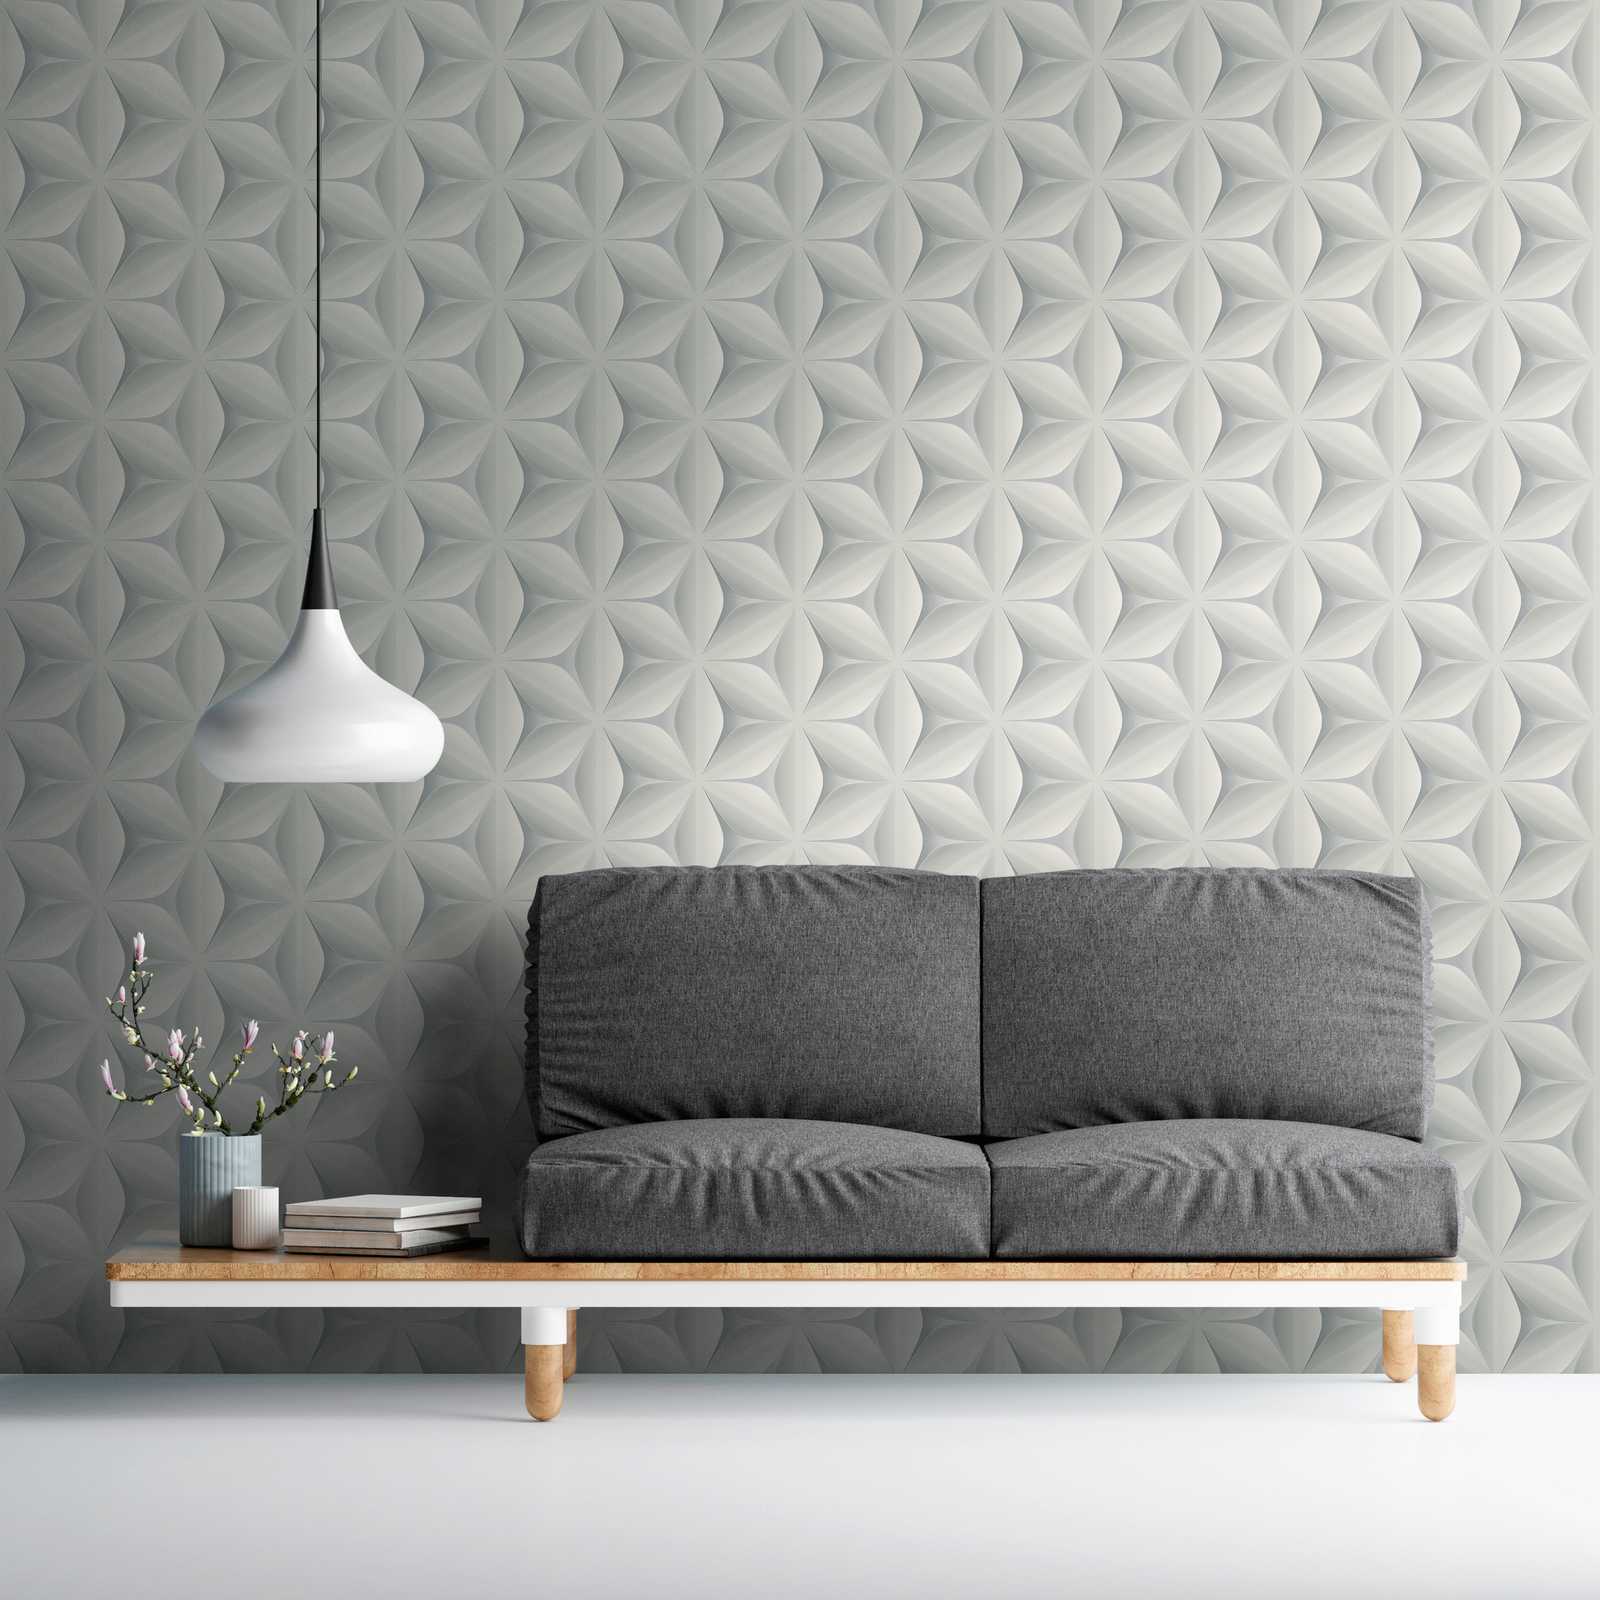             Papel pintado vintage patrón escandinavo - gris
        